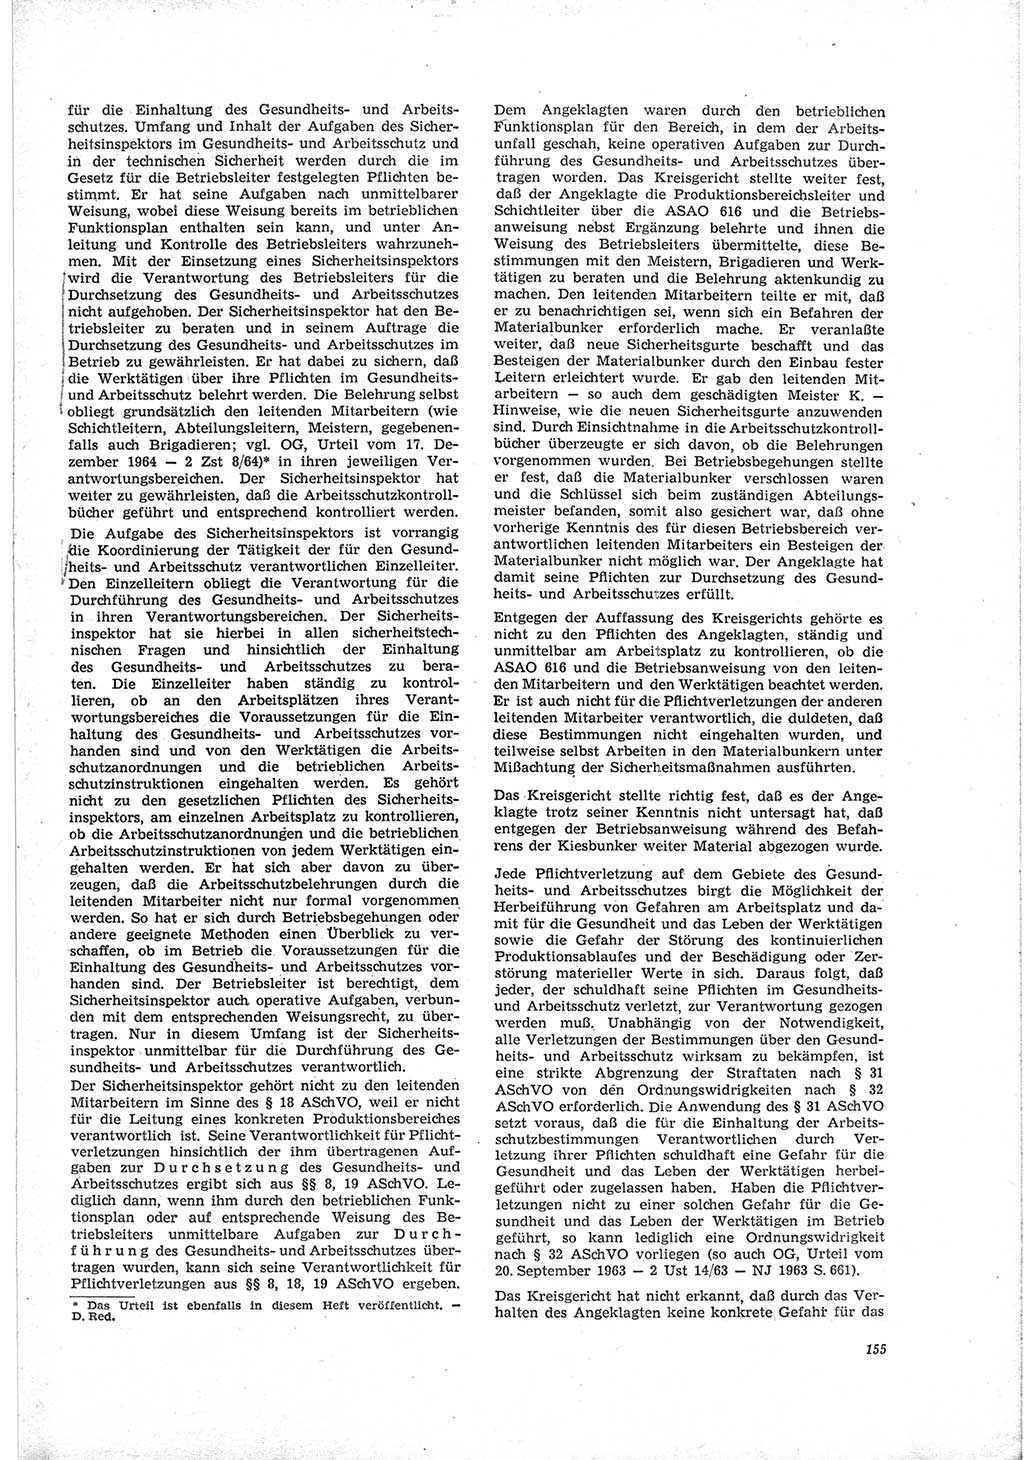 Neue Justiz (NJ), Zeitschrift für Recht und Rechtswissenschaft [Deutsche Demokratische Republik (DDR)], 19. Jahrgang 1965, Seite 155 (NJ DDR 1965, S. 155)